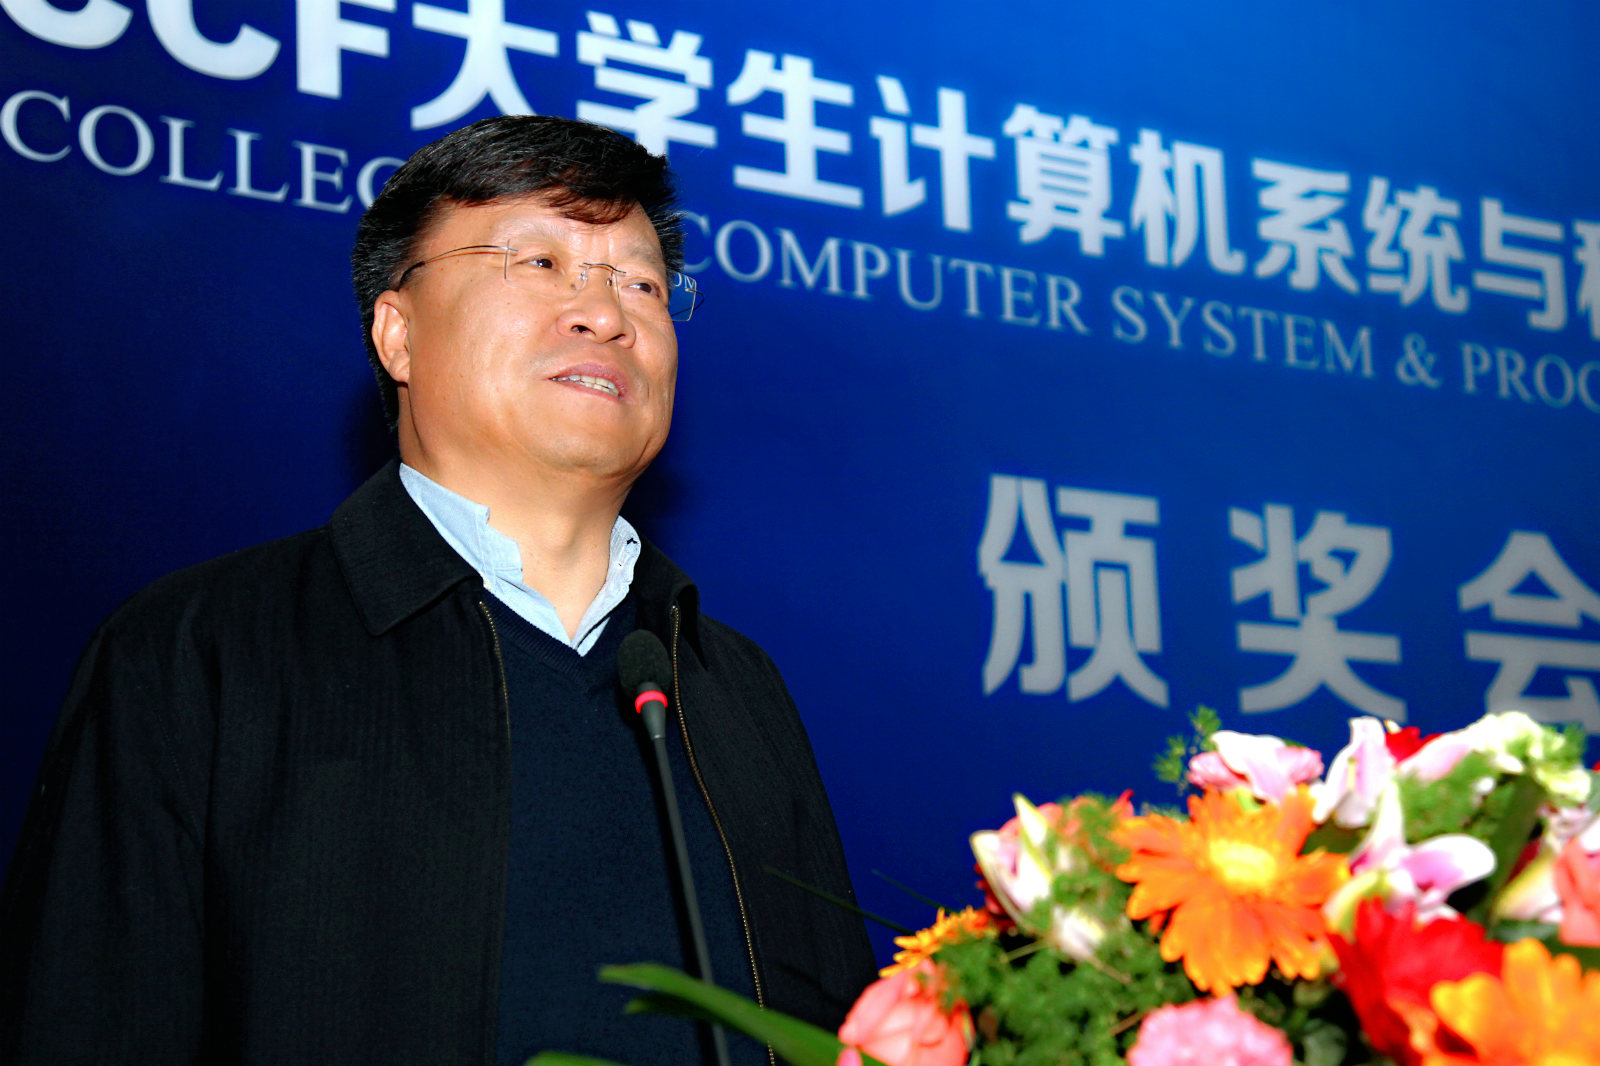 中國工程院院士高文在頒獎會上致辭